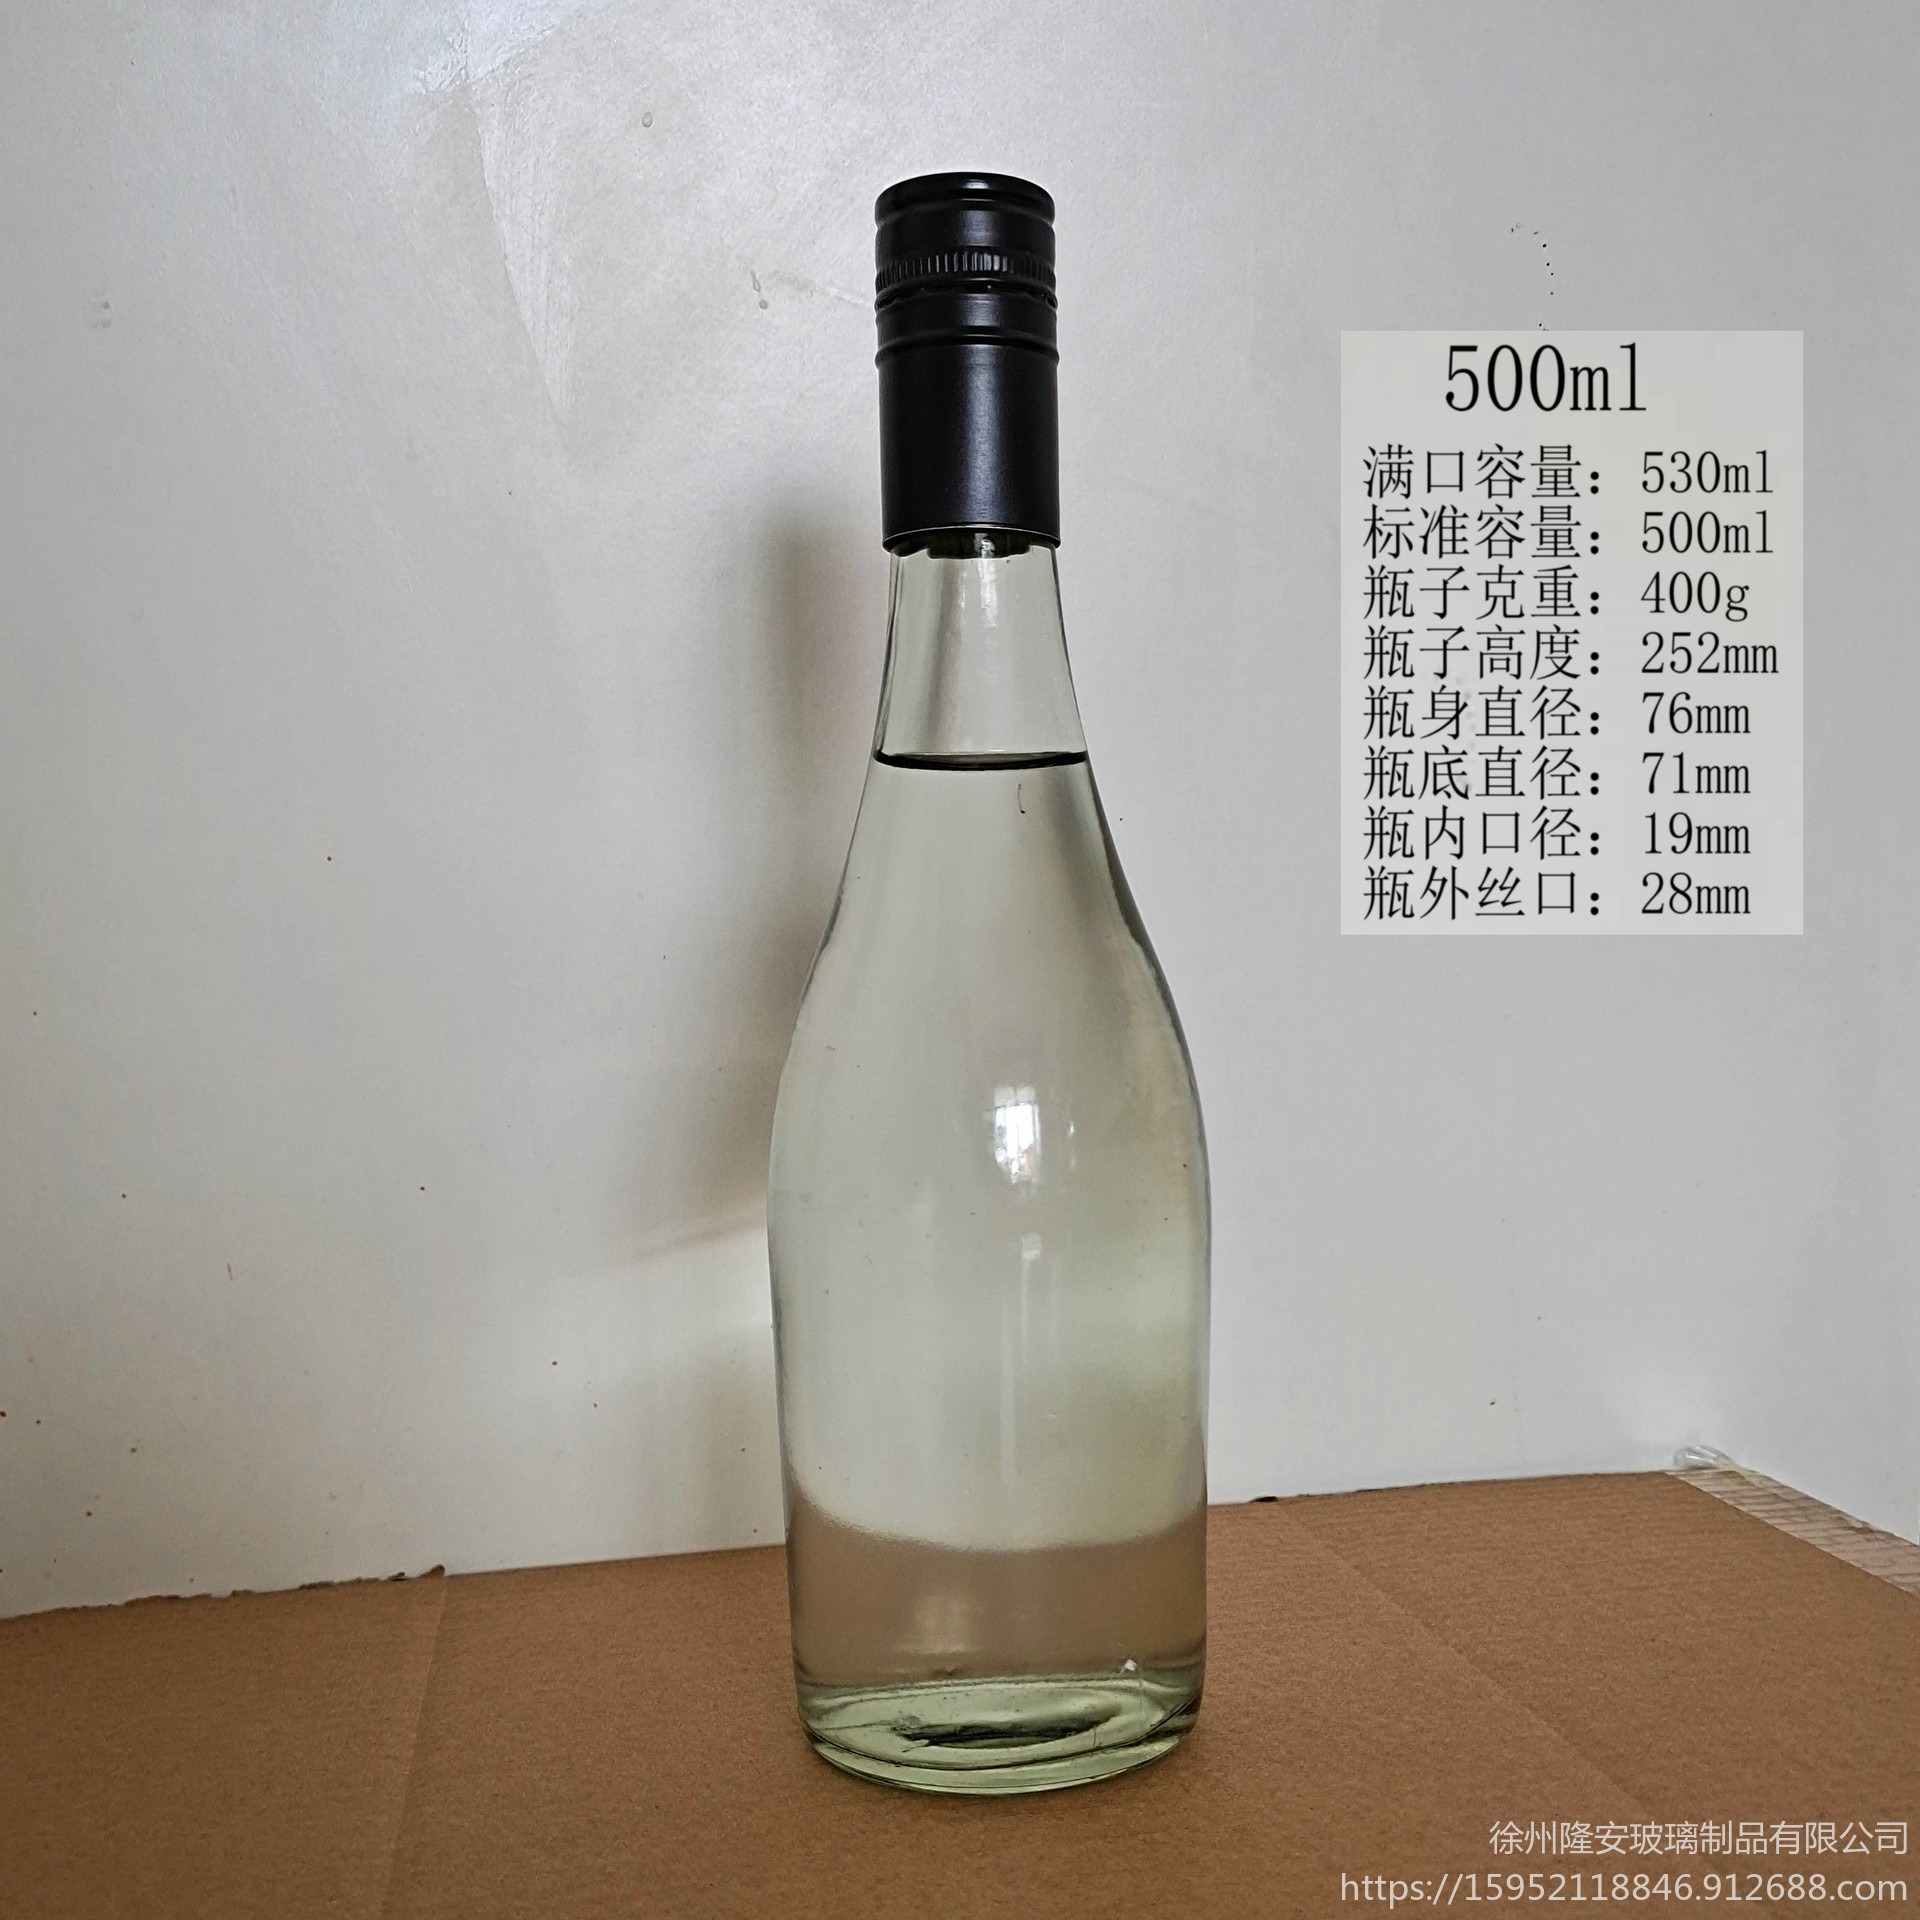 一斤玻璃酒瓶500ml白酒玻璃瓶生产商酒瓶生产厂家批发订购250ml500ml徐州隆安玻璃瓶厂